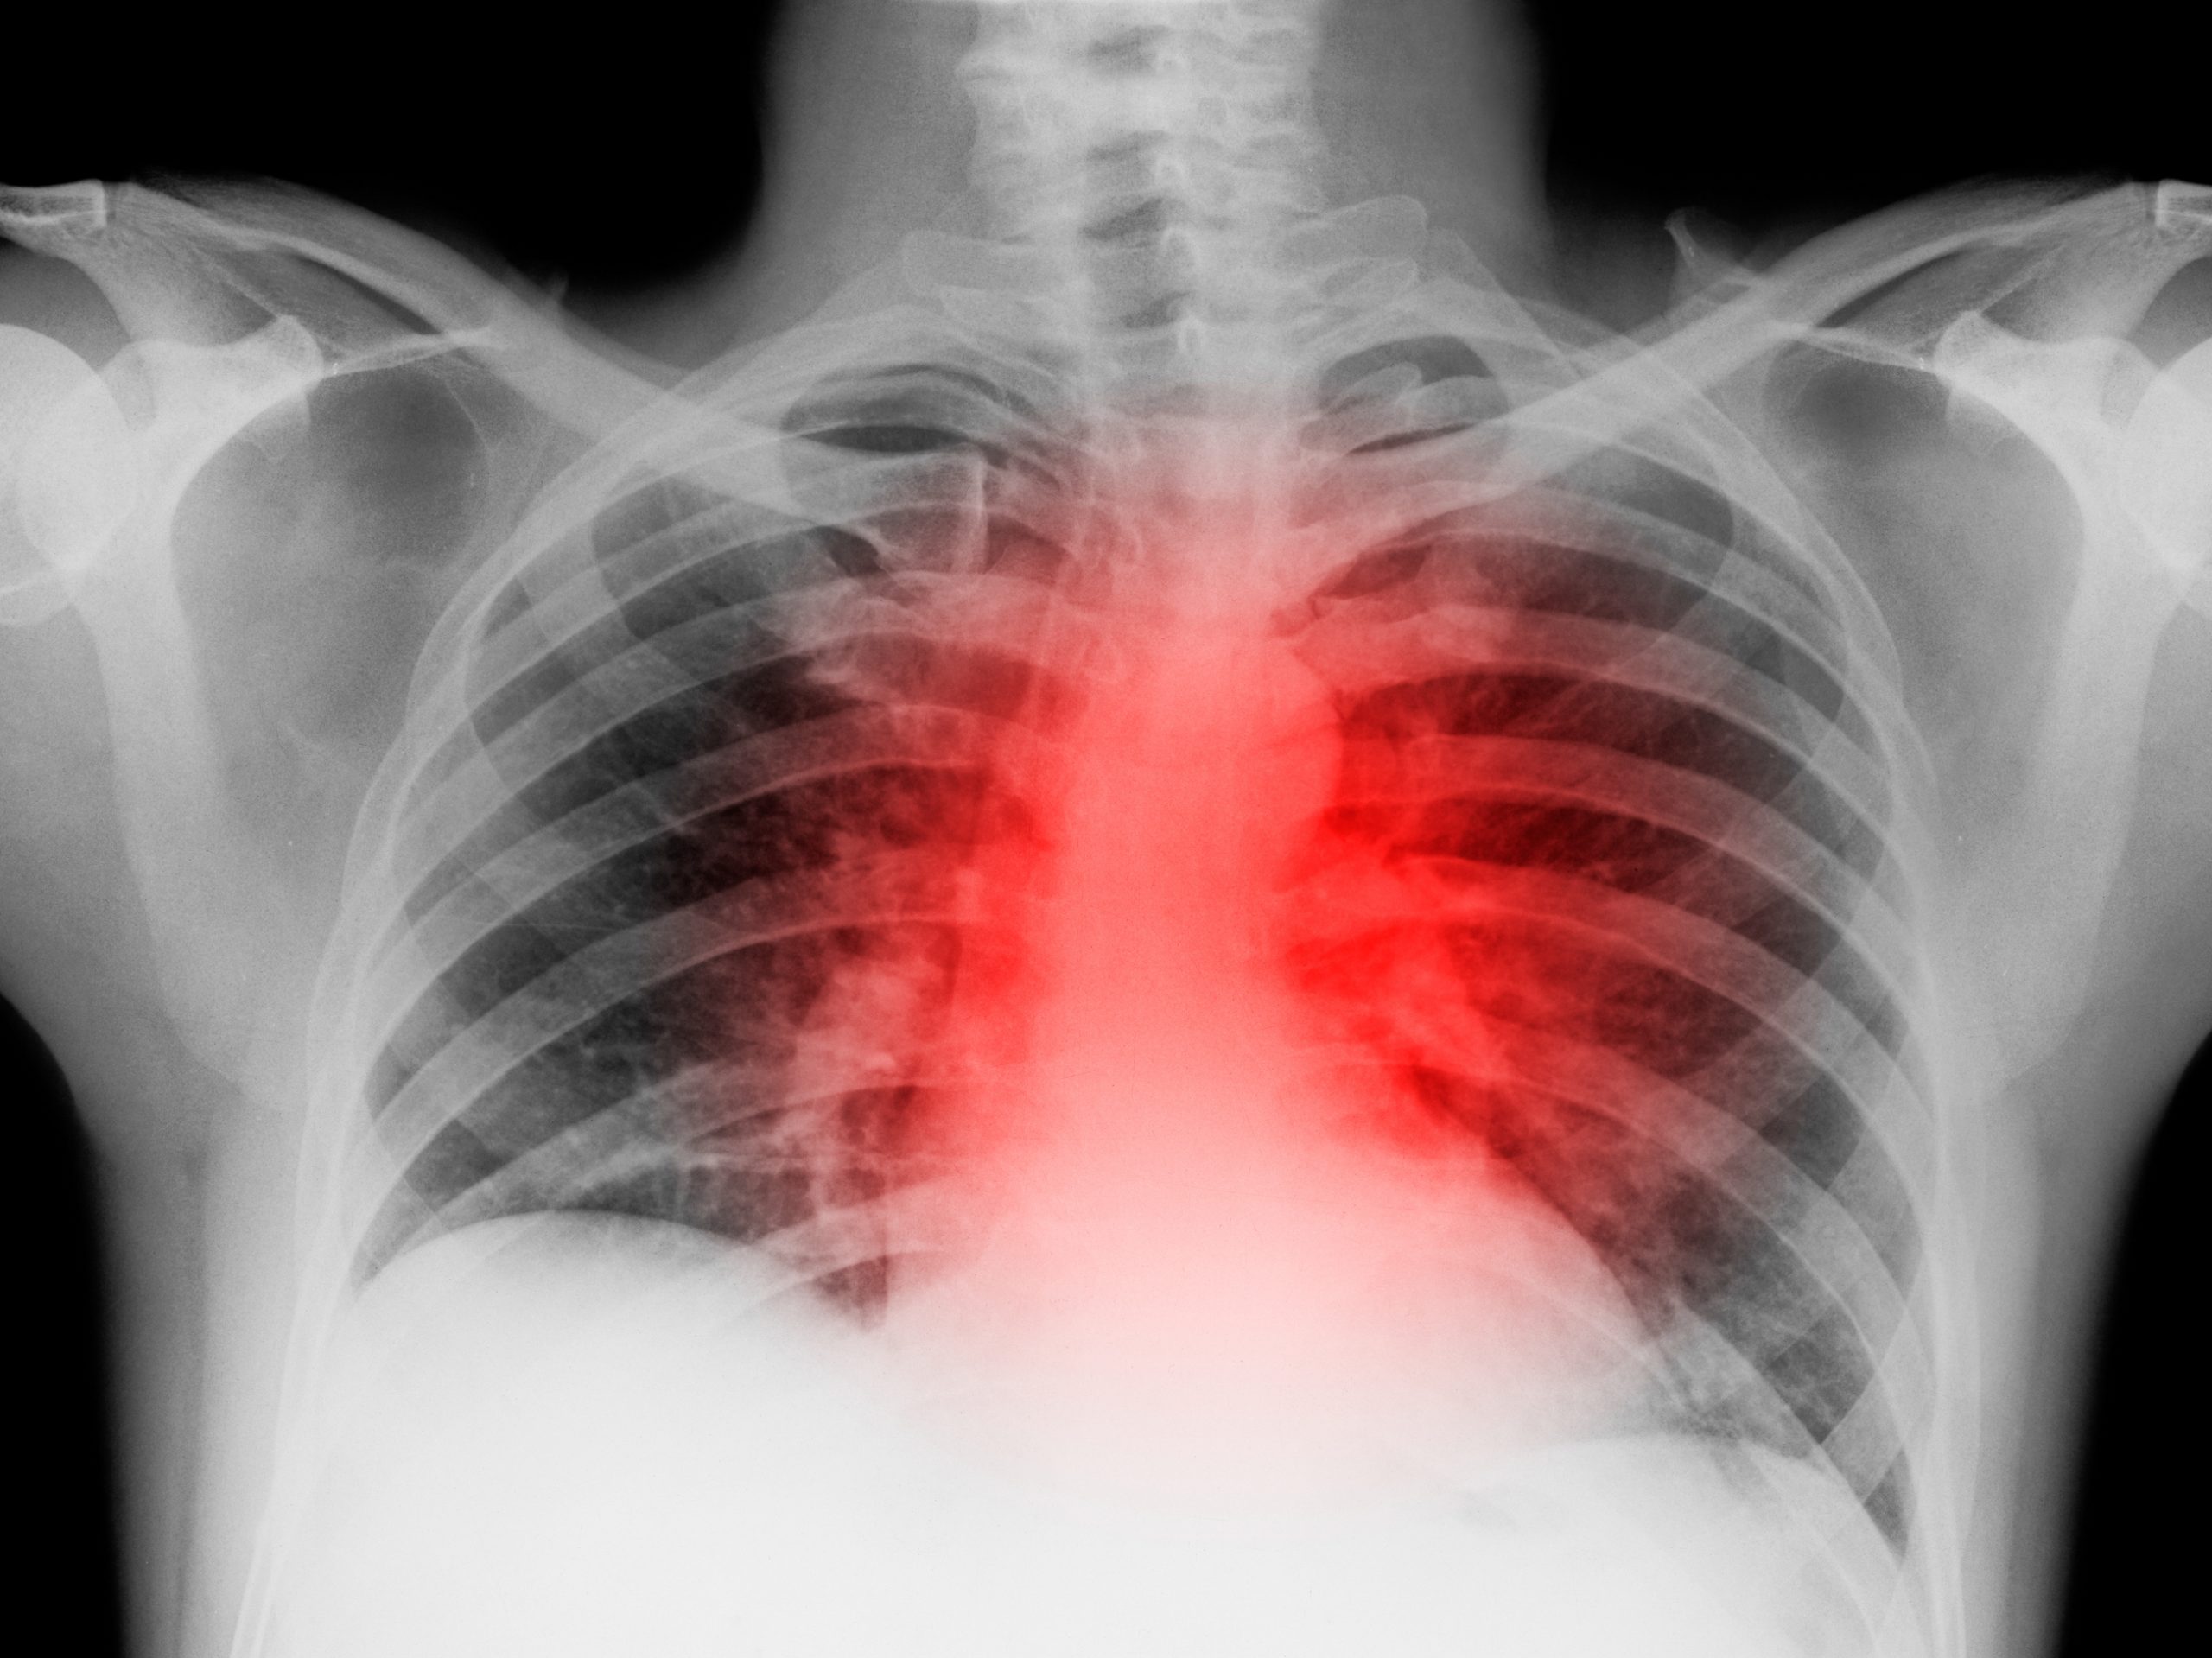 Закрытая травма легкого. Ушиб грудной клетки рентген. Рентген ребер грудной клетки. Сердце на рентгене грудной клетки.